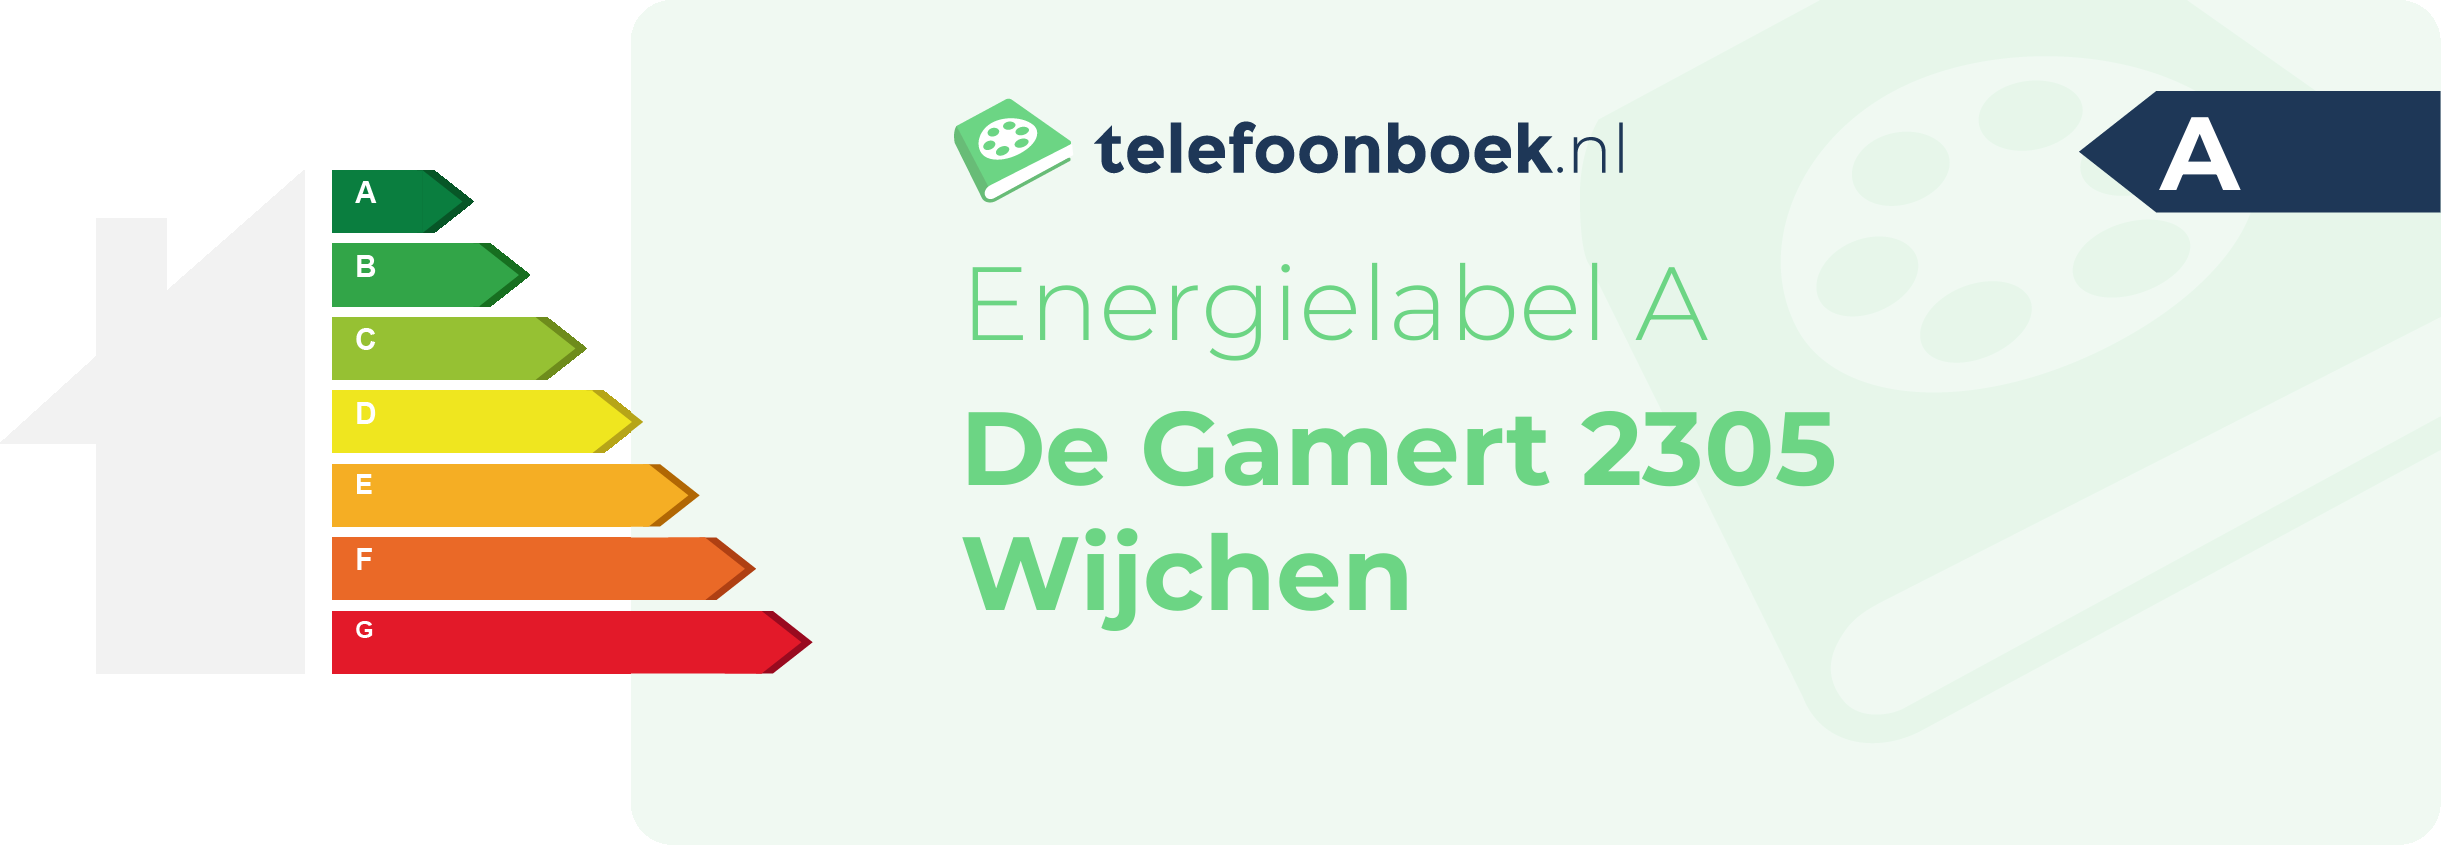 Energielabel De Gamert 2305 Wijchen